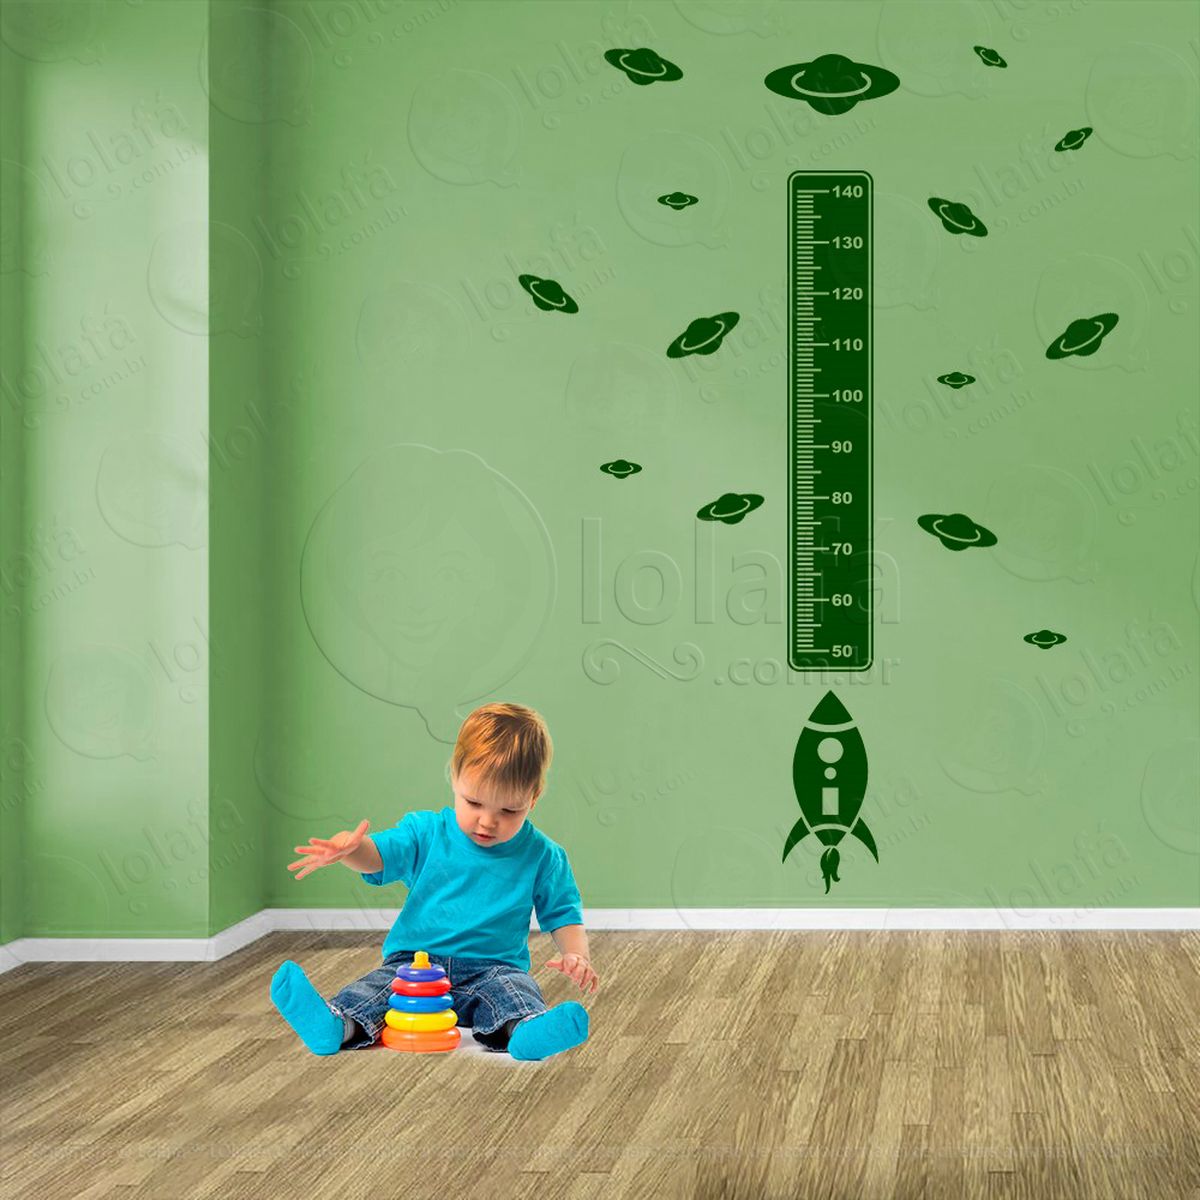 foguete e planetas adesivo régua de crescimento infantil, medidor de altura para quarto, porta e parede - mod:1265